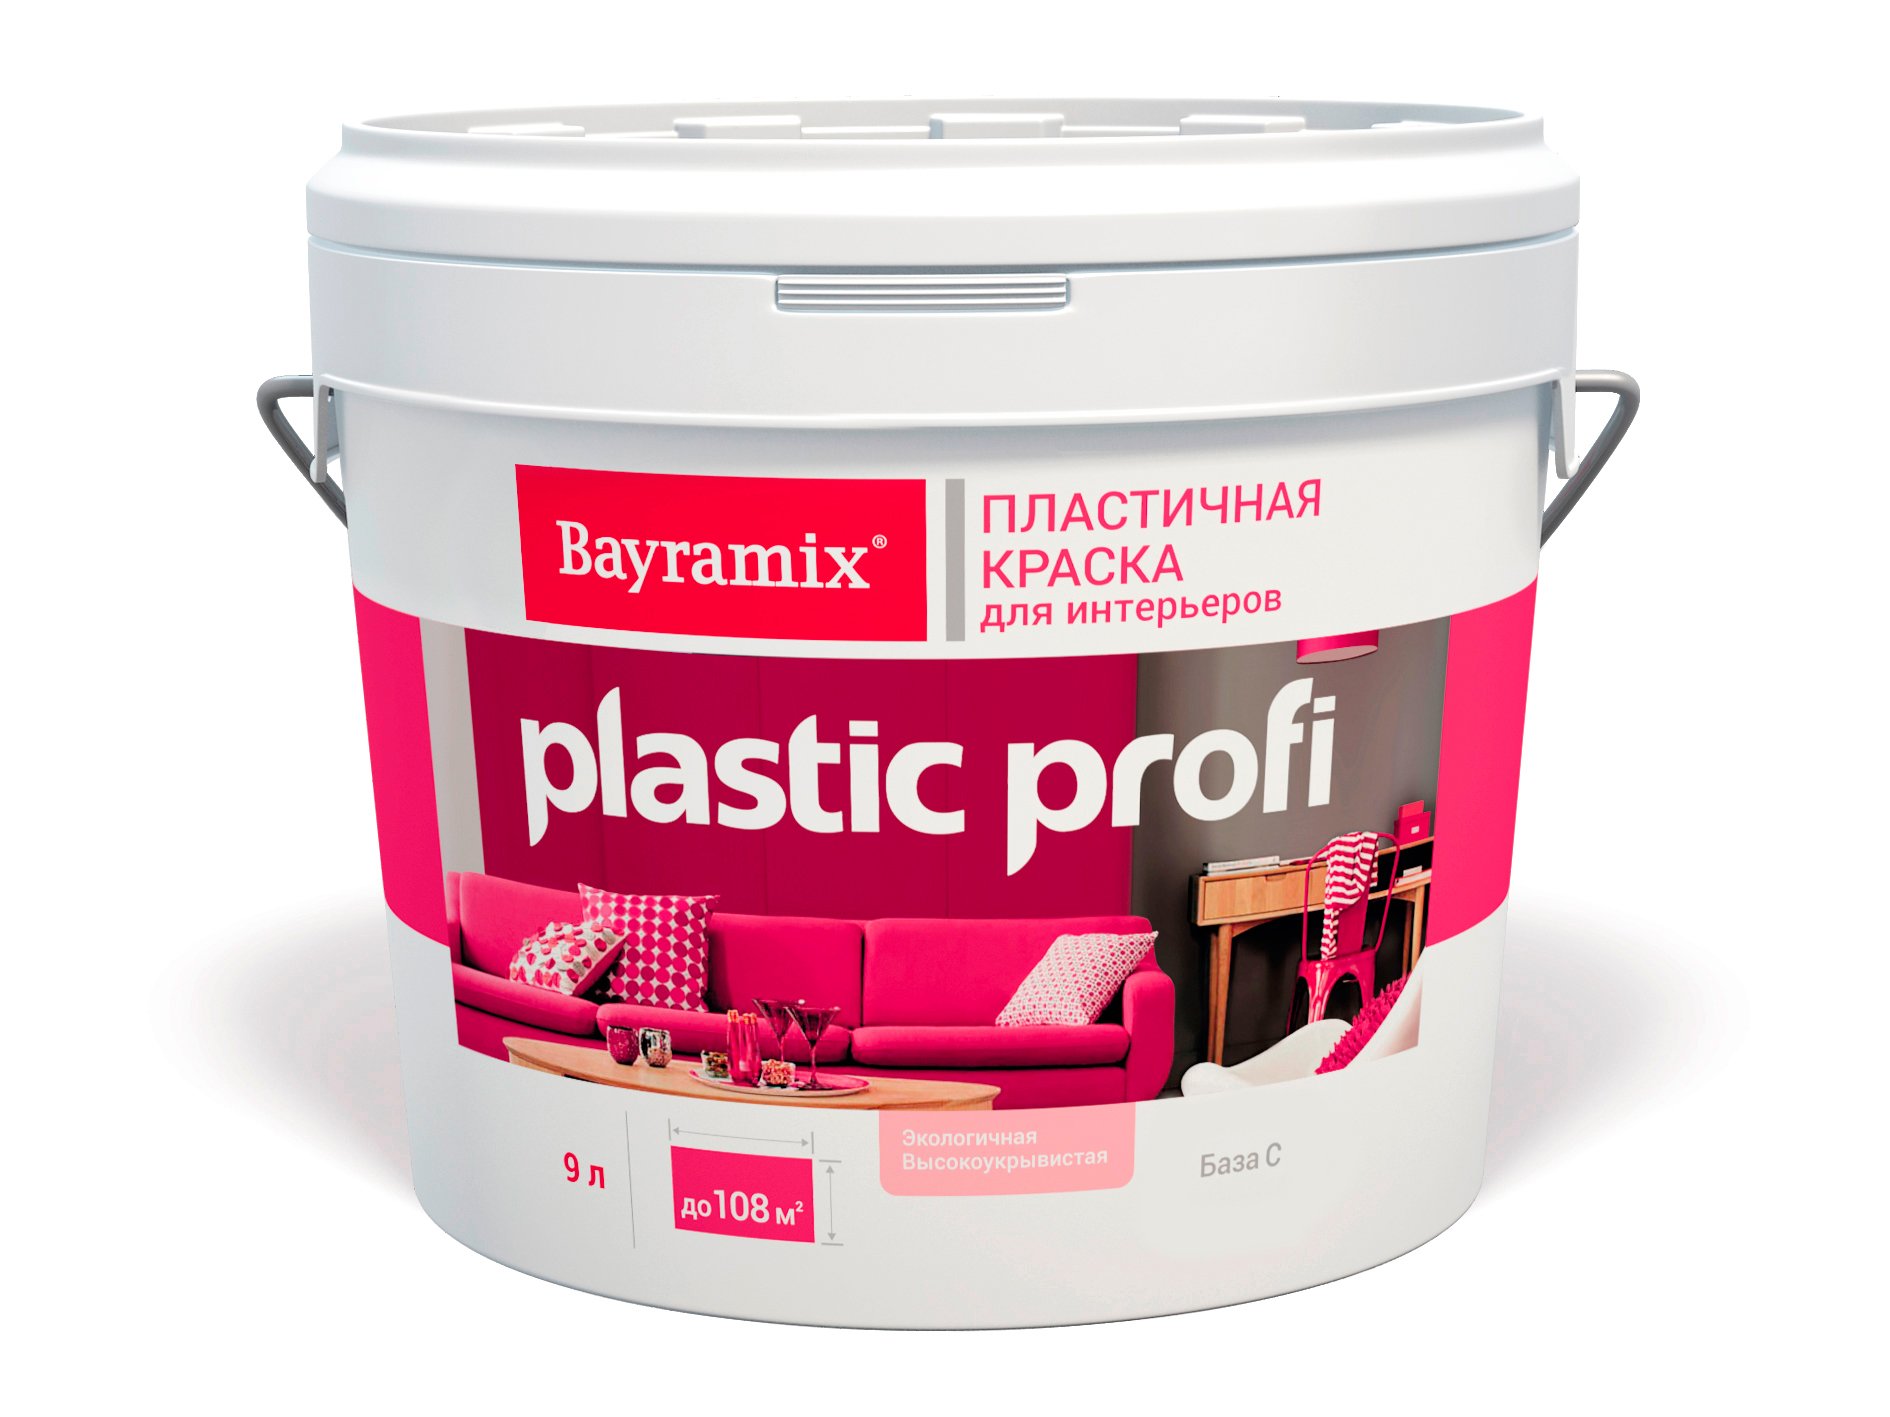 Краска матовая Bayramix Plastik Profi База C бесцветная 12,5кг/9,0л (только колеровка) краска bayramix cristal air stopvirus база а bcas 027 4 кг 2 7 л